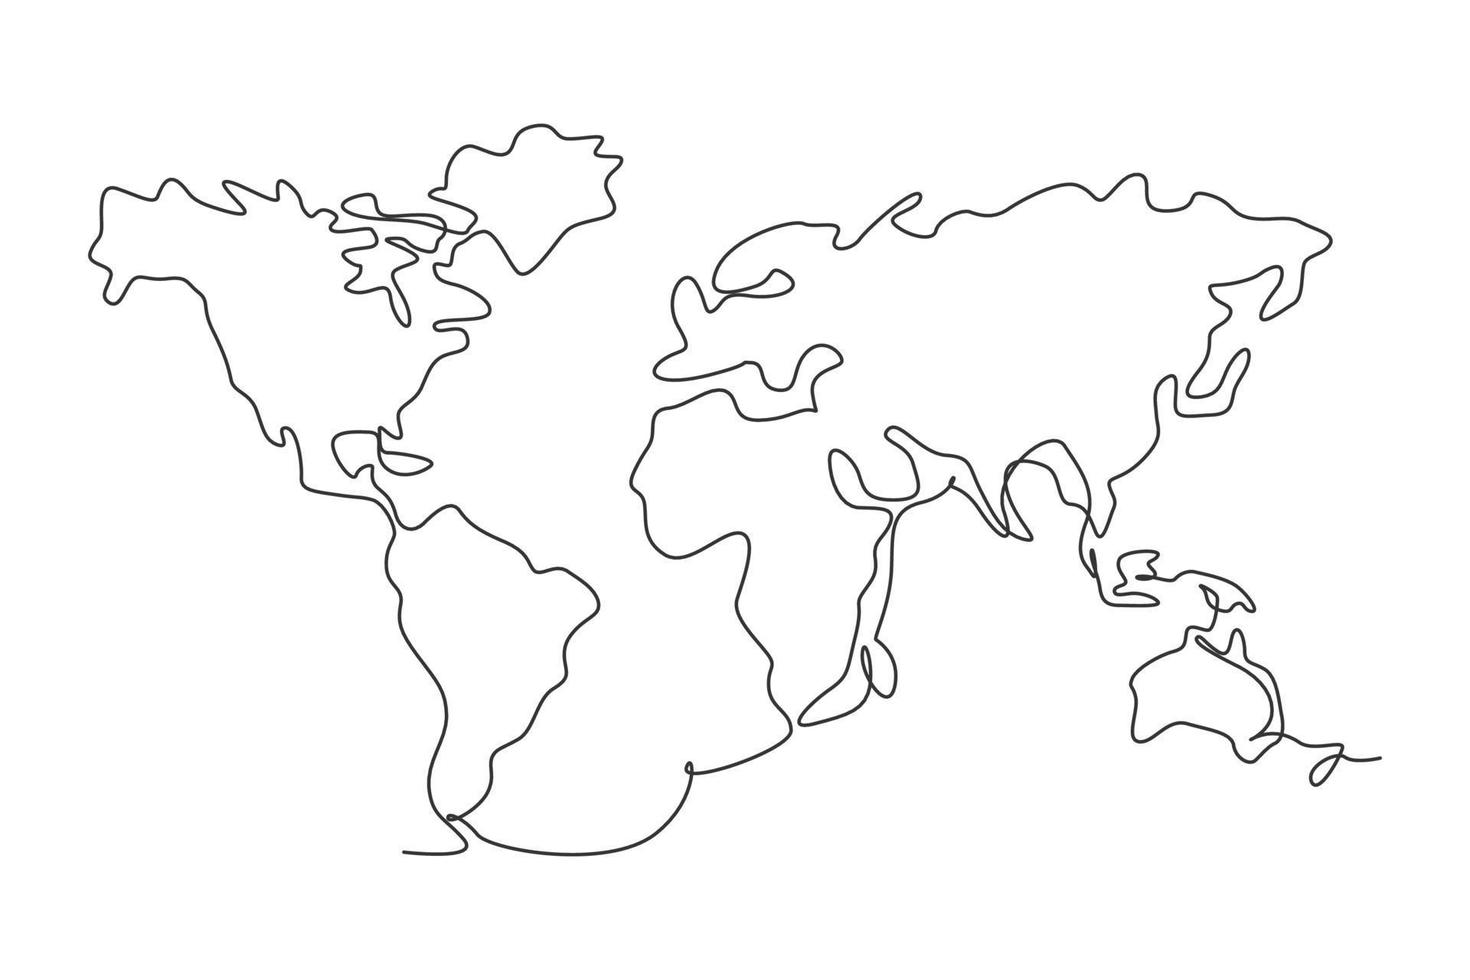 mapa mundial. contínuo um desenho de linha do projeto de ilustração vetorial minimalista do atlas mundial sobre fundo branco. estilo gráfico moderno de linha simples isolada. mão desenhada conceito gráfico para educação vetor